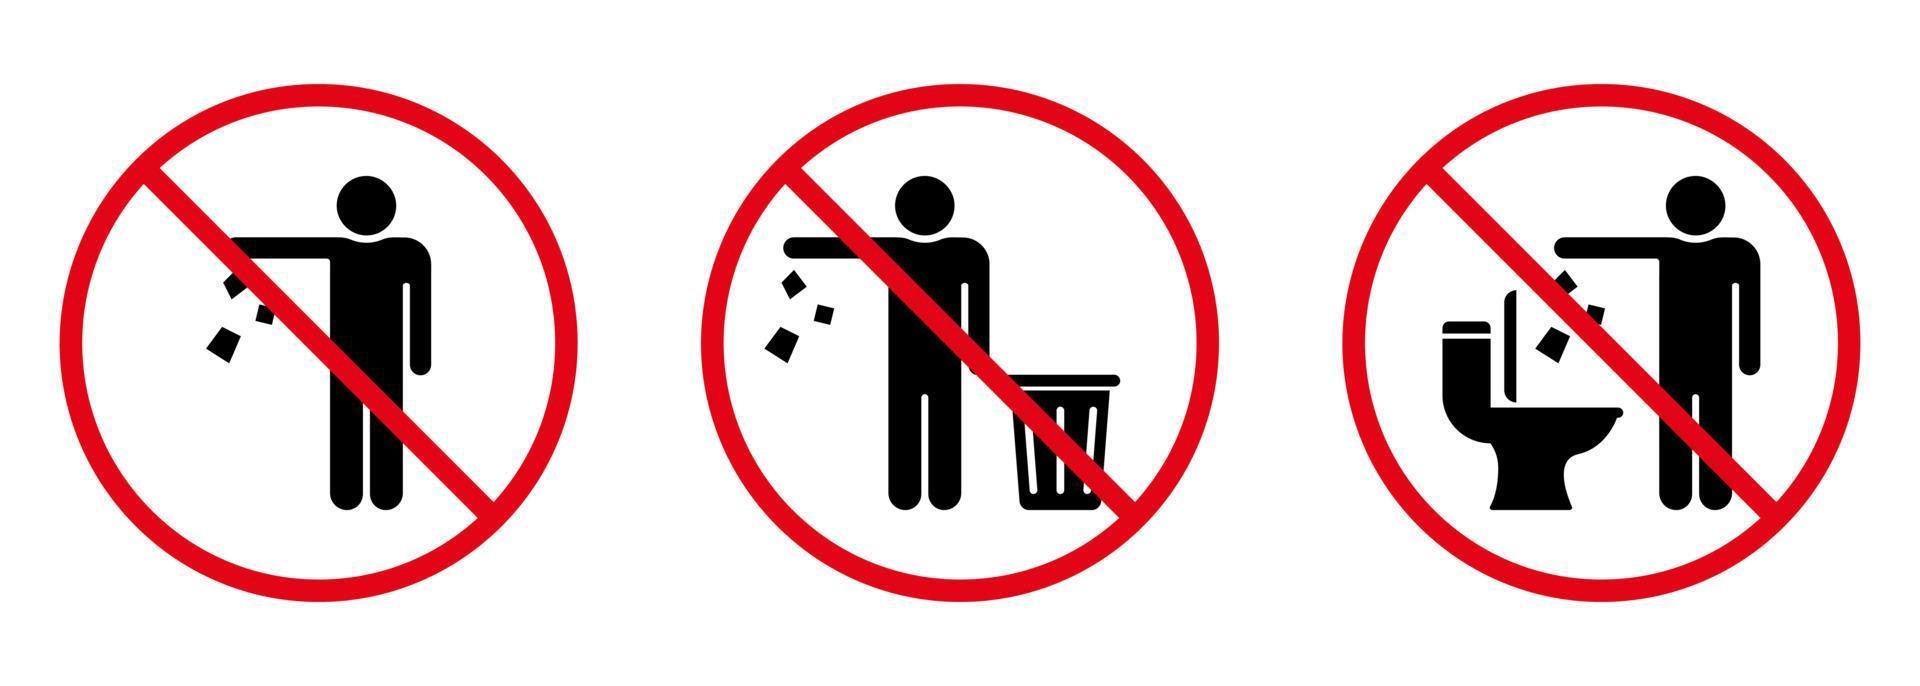 Werfen Sie keinen Müll in das Toilettenzeichen-Silhouette-Symbol. Verbotener Müllwurf, Abfall, Müllsymbol. Warnung, bitte werfen Sie Müll in das Mülleimer-Symbol. Glyphen-Piktogramm sauber halten. isolierte Vektorillustration. vektor